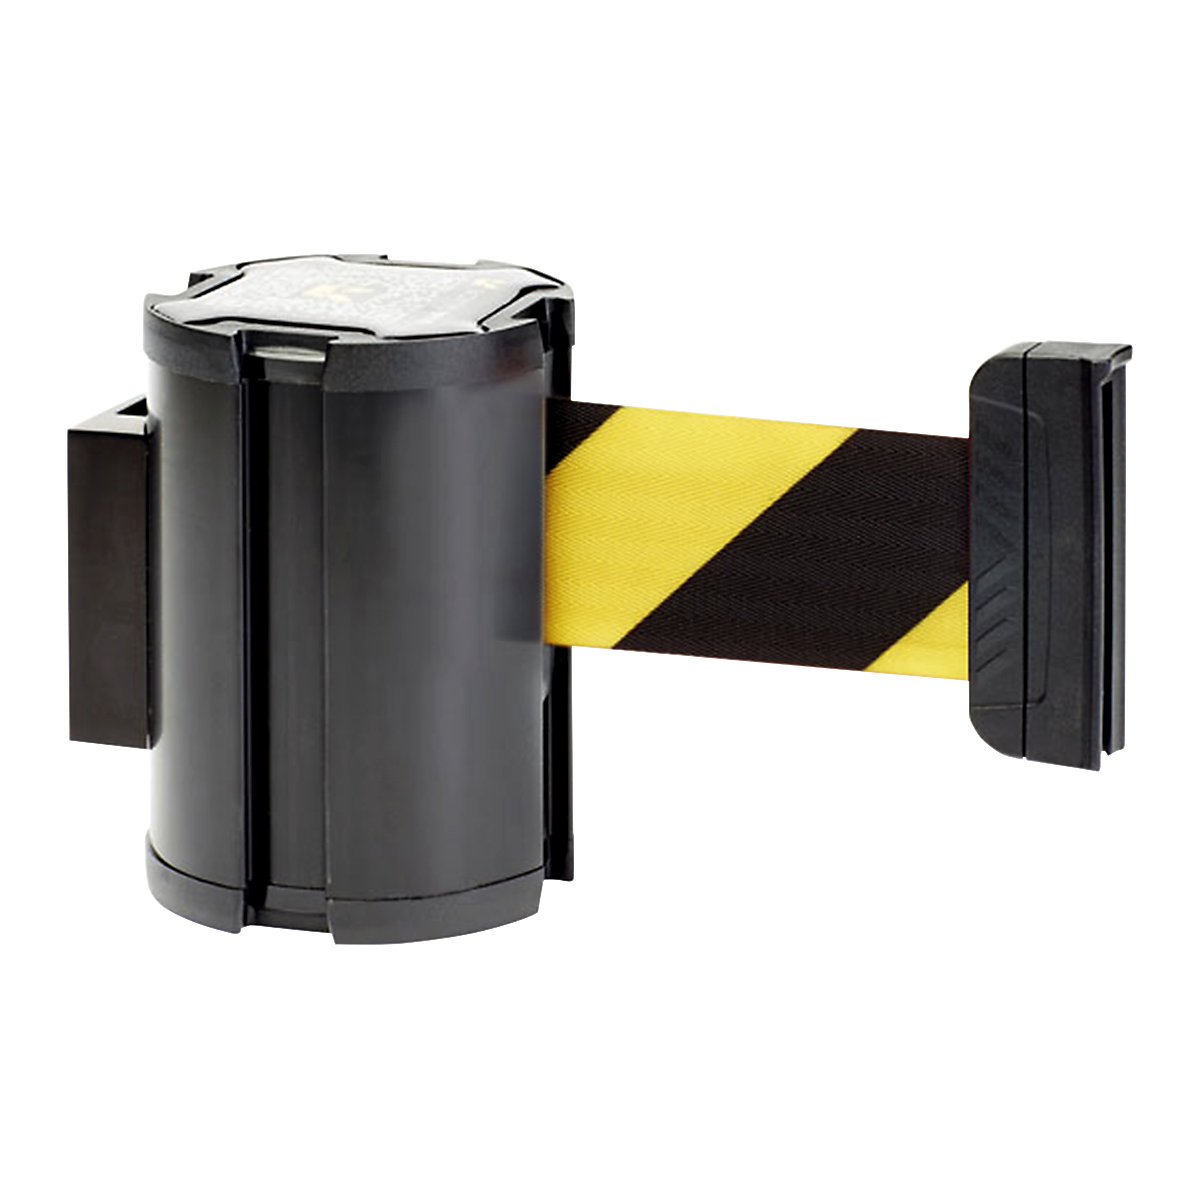 Cassete de cinta, extração máx. da cinta 3000 mm, cassete preta, cinta amarela/preta-2